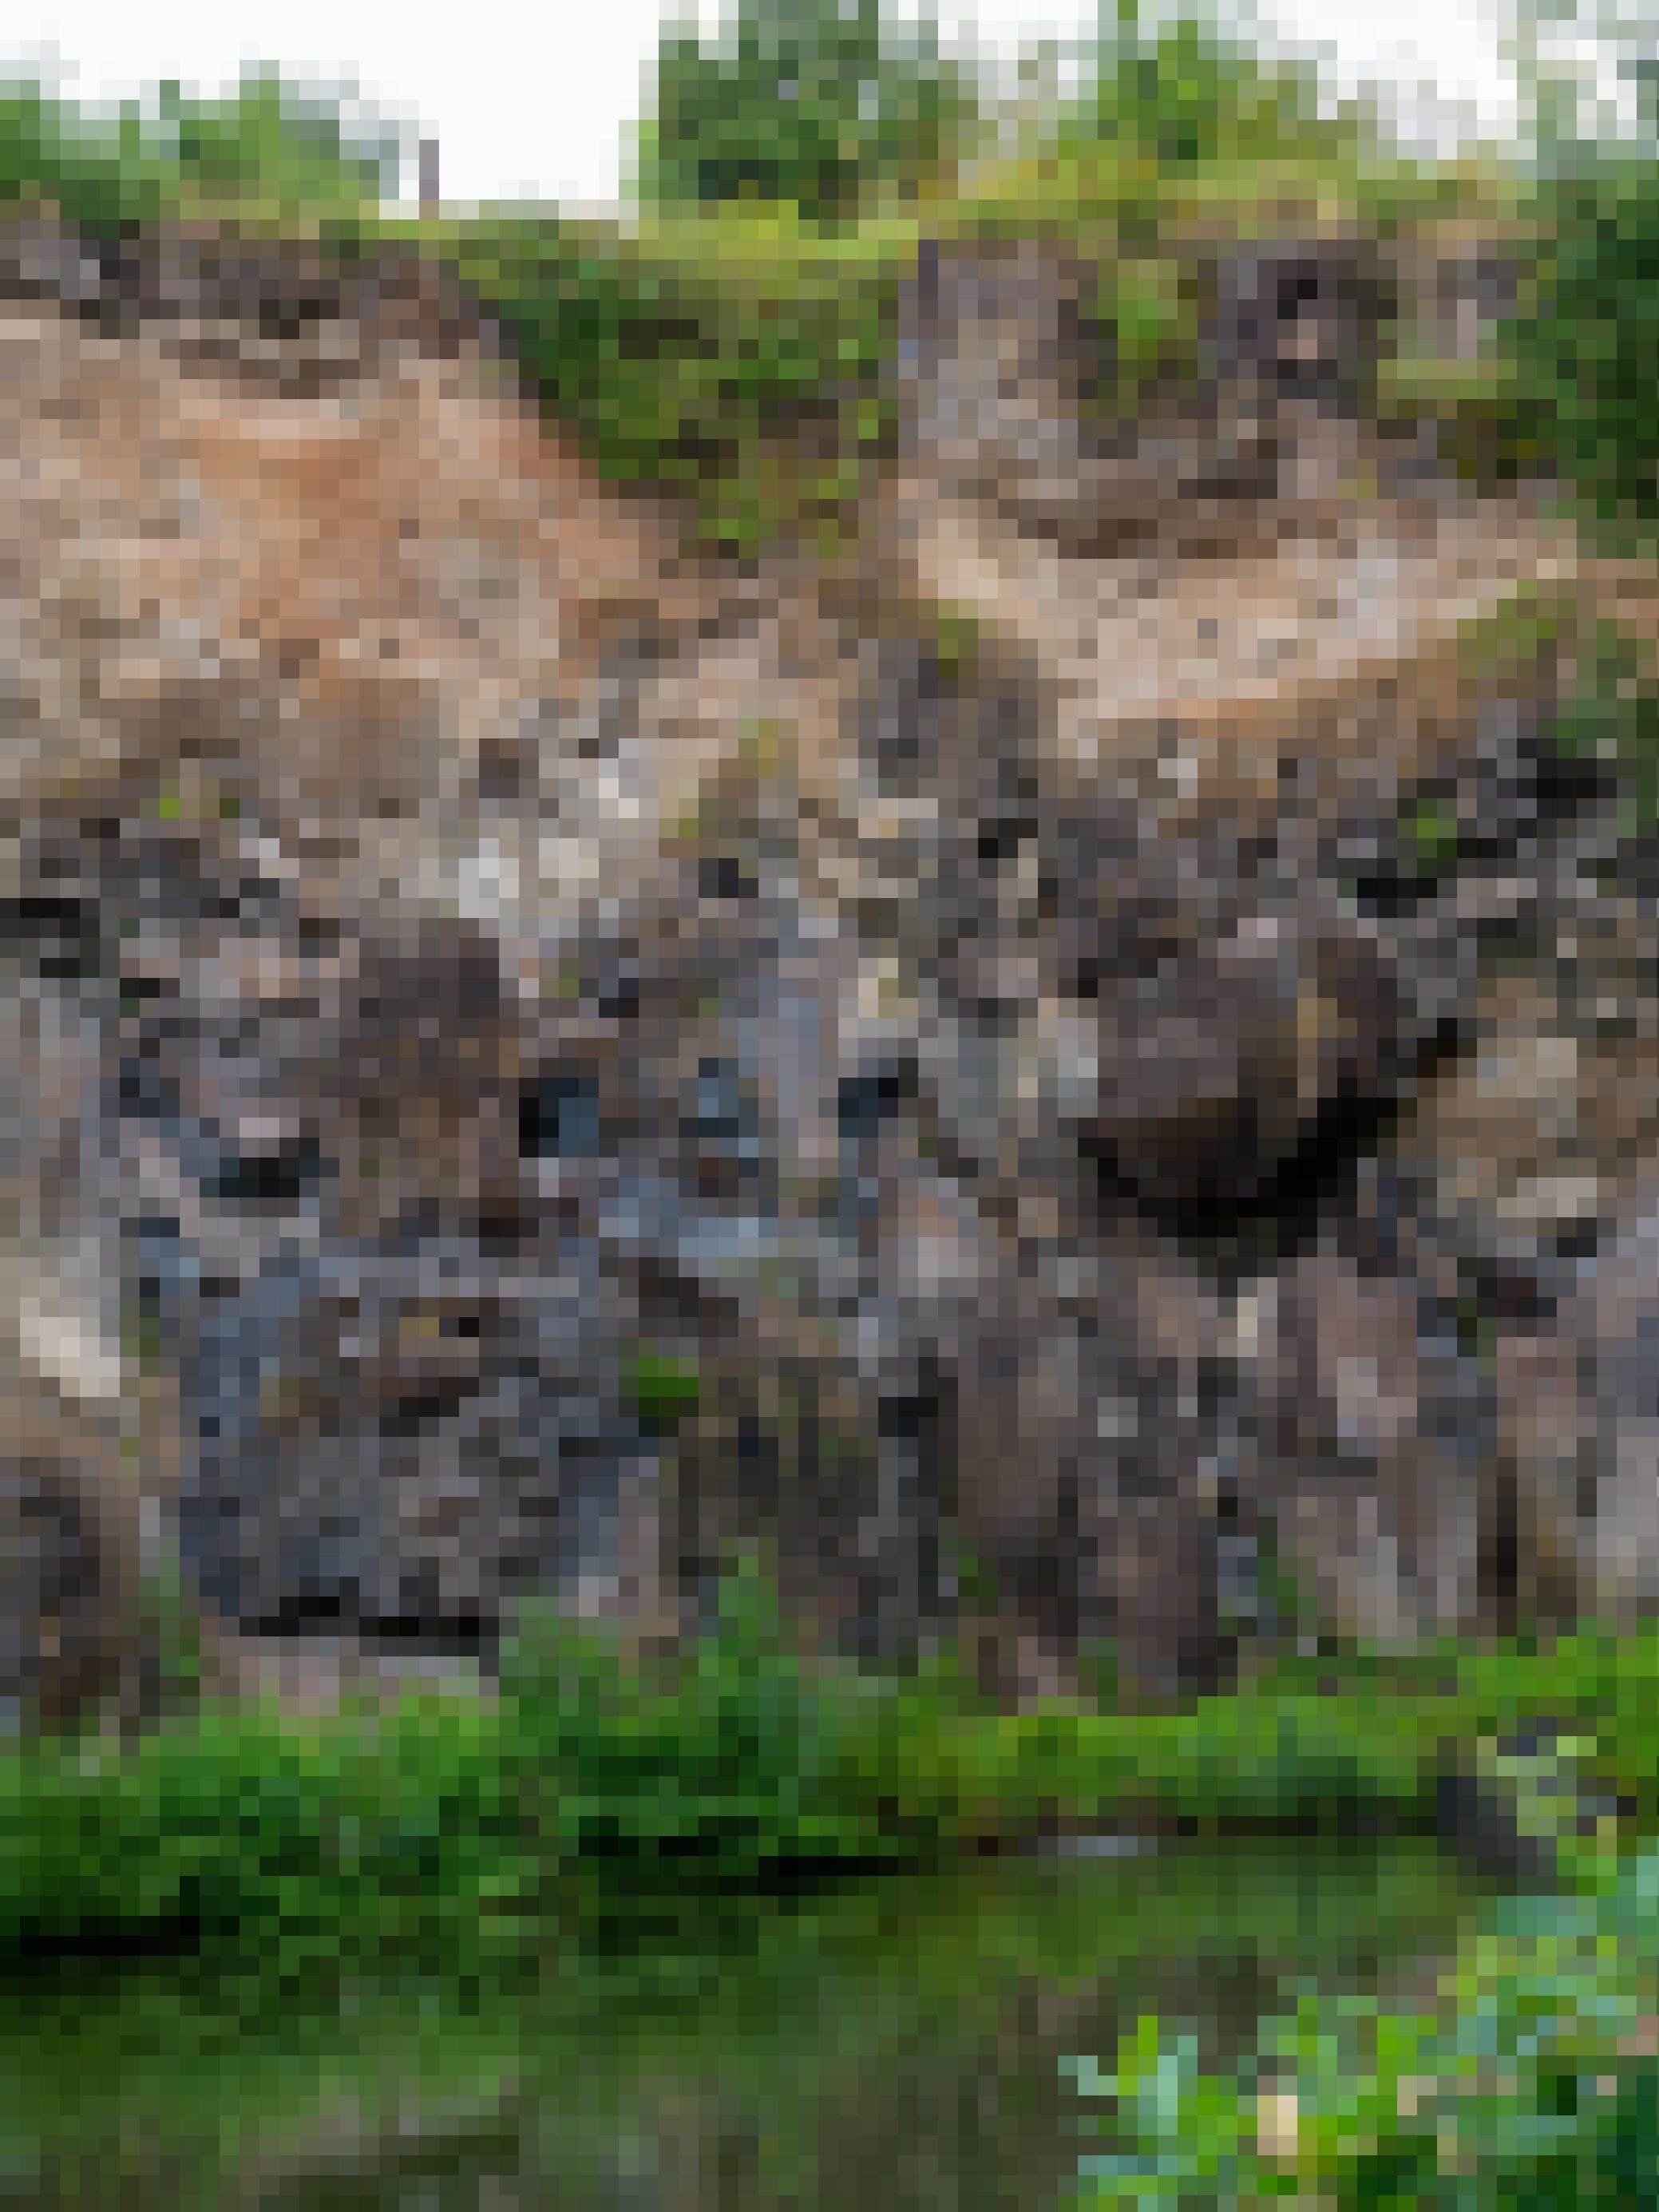 An der Oberkannte eines Steinbruchs ist bewachsener Boden zu erkennen, aus dem Wasser durch ein Rohr abfließt, Darunter Schichten aus beigem Tuff und schwarz-braunen Basaltblöcken. Am Boden des Steinbruchs hat sich ein Teich gebildet, an dessen Ufer grüne Pflanzen sprießen.